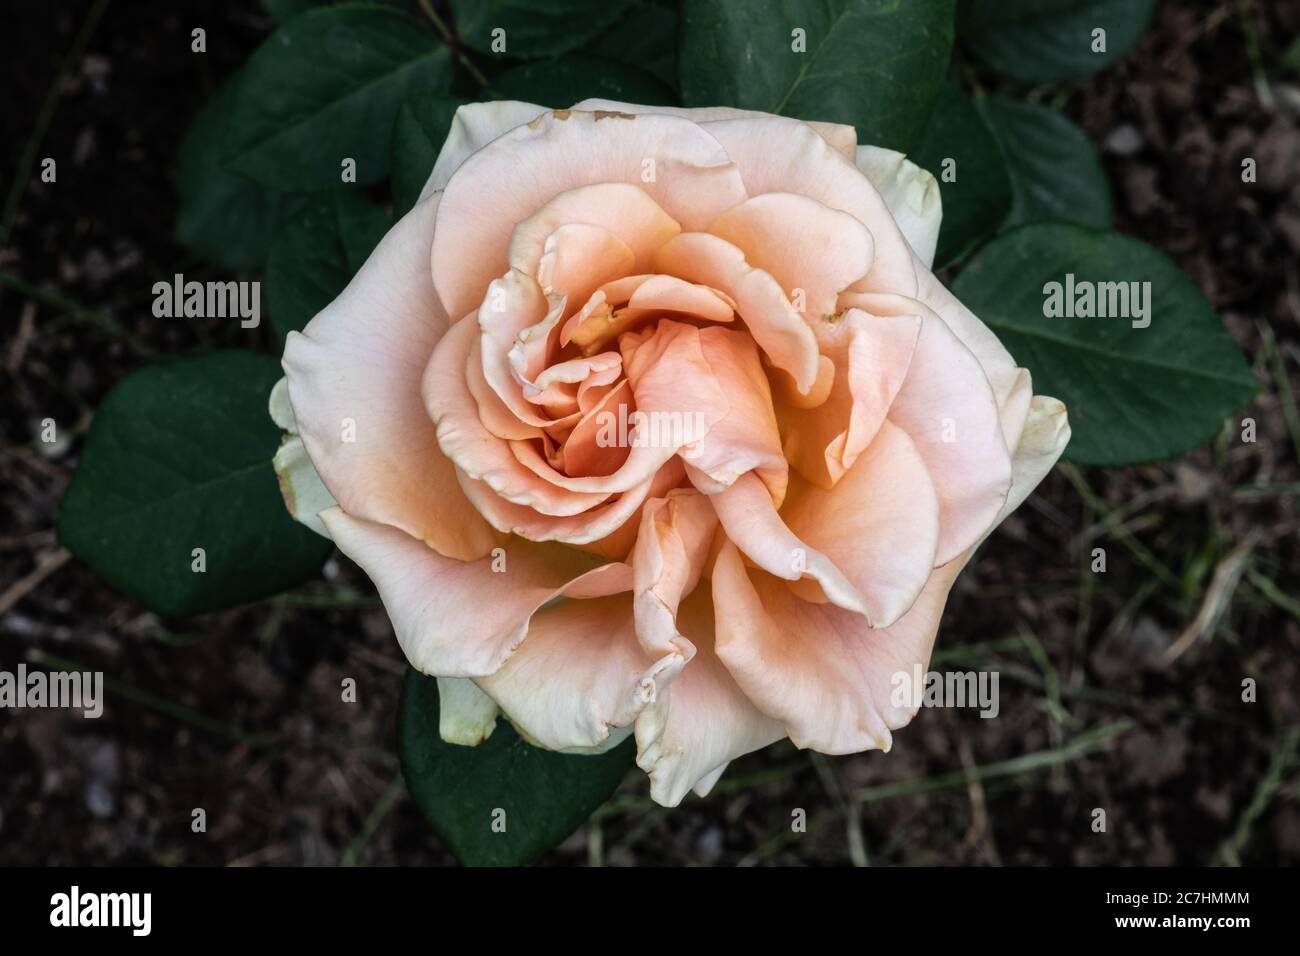 Garden Rose Flower, Variety 'Marilyn Monroe' Stock Photo